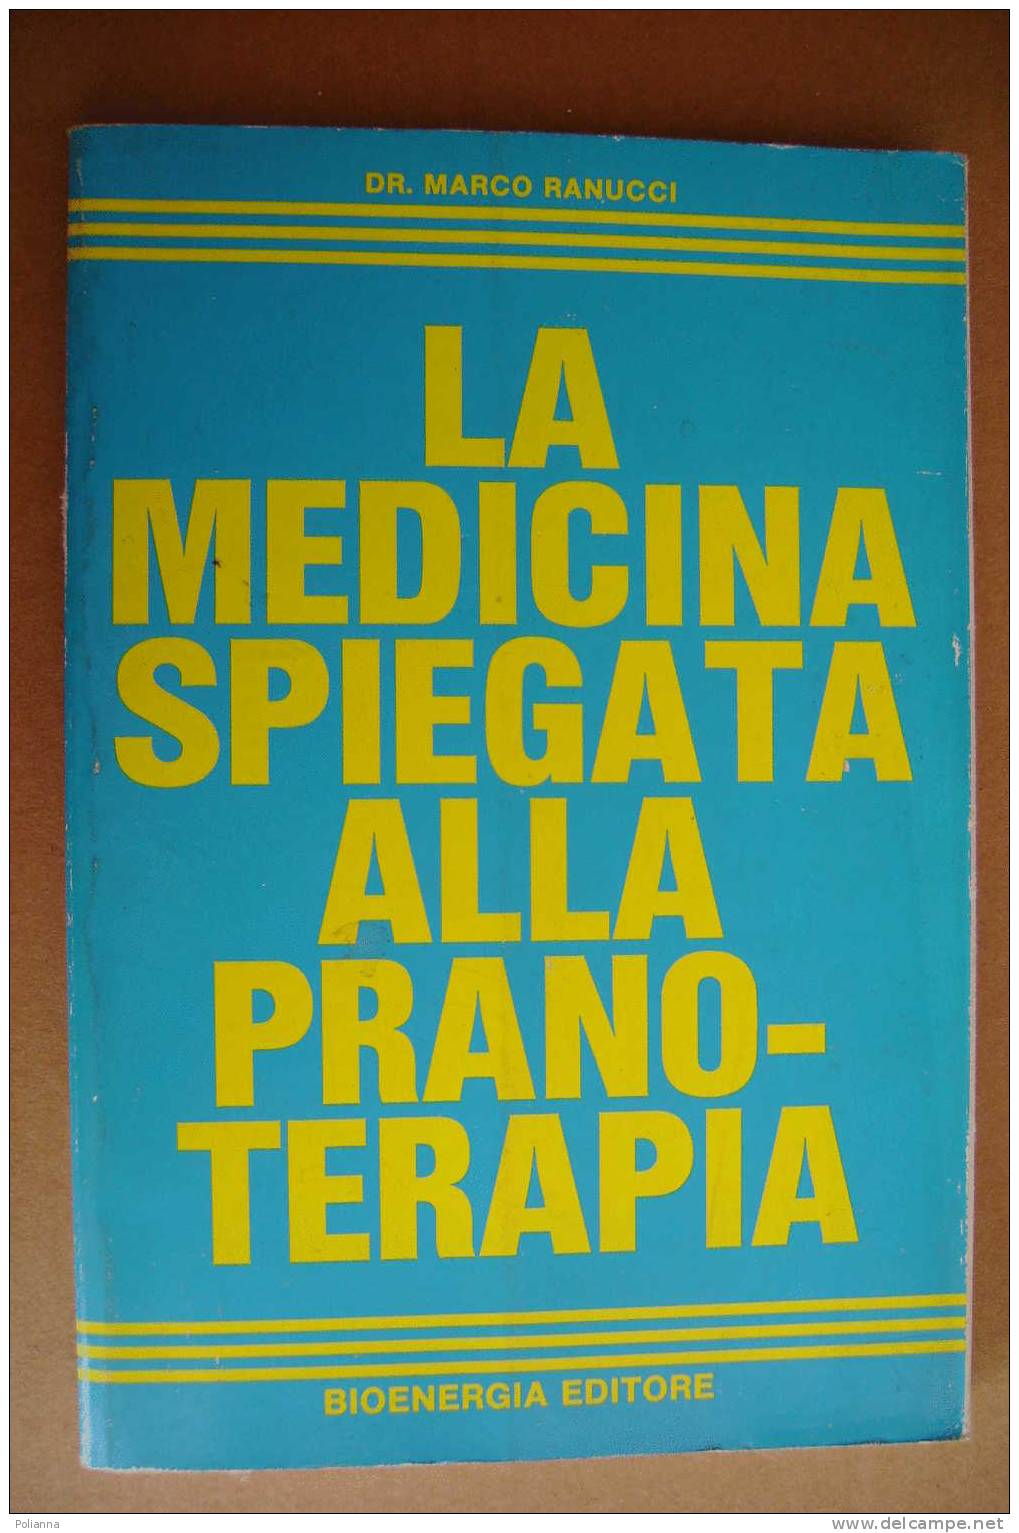 PAO/32 Dr.Marco Ranucci LA MEDICINA SPIEGATA ALLA PRANOTERAPIA Bioenergia Edit. 1985 - Medicina, Psicología